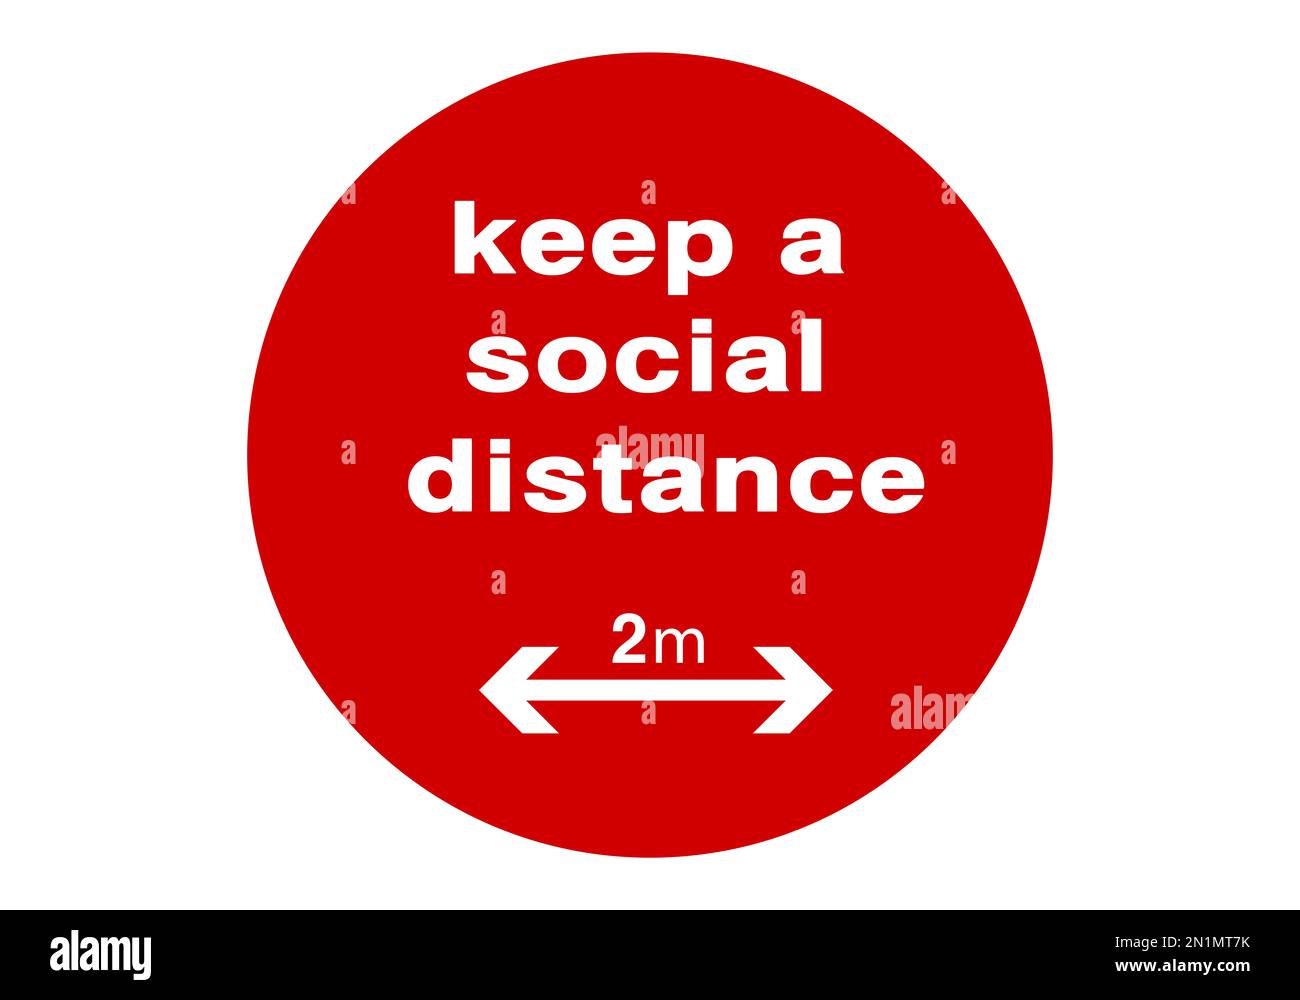 Gardez une distance sociale - signe rond rouge, illustration. Mesure de protection en cas de pandémie de coronavirus Banque D'Images